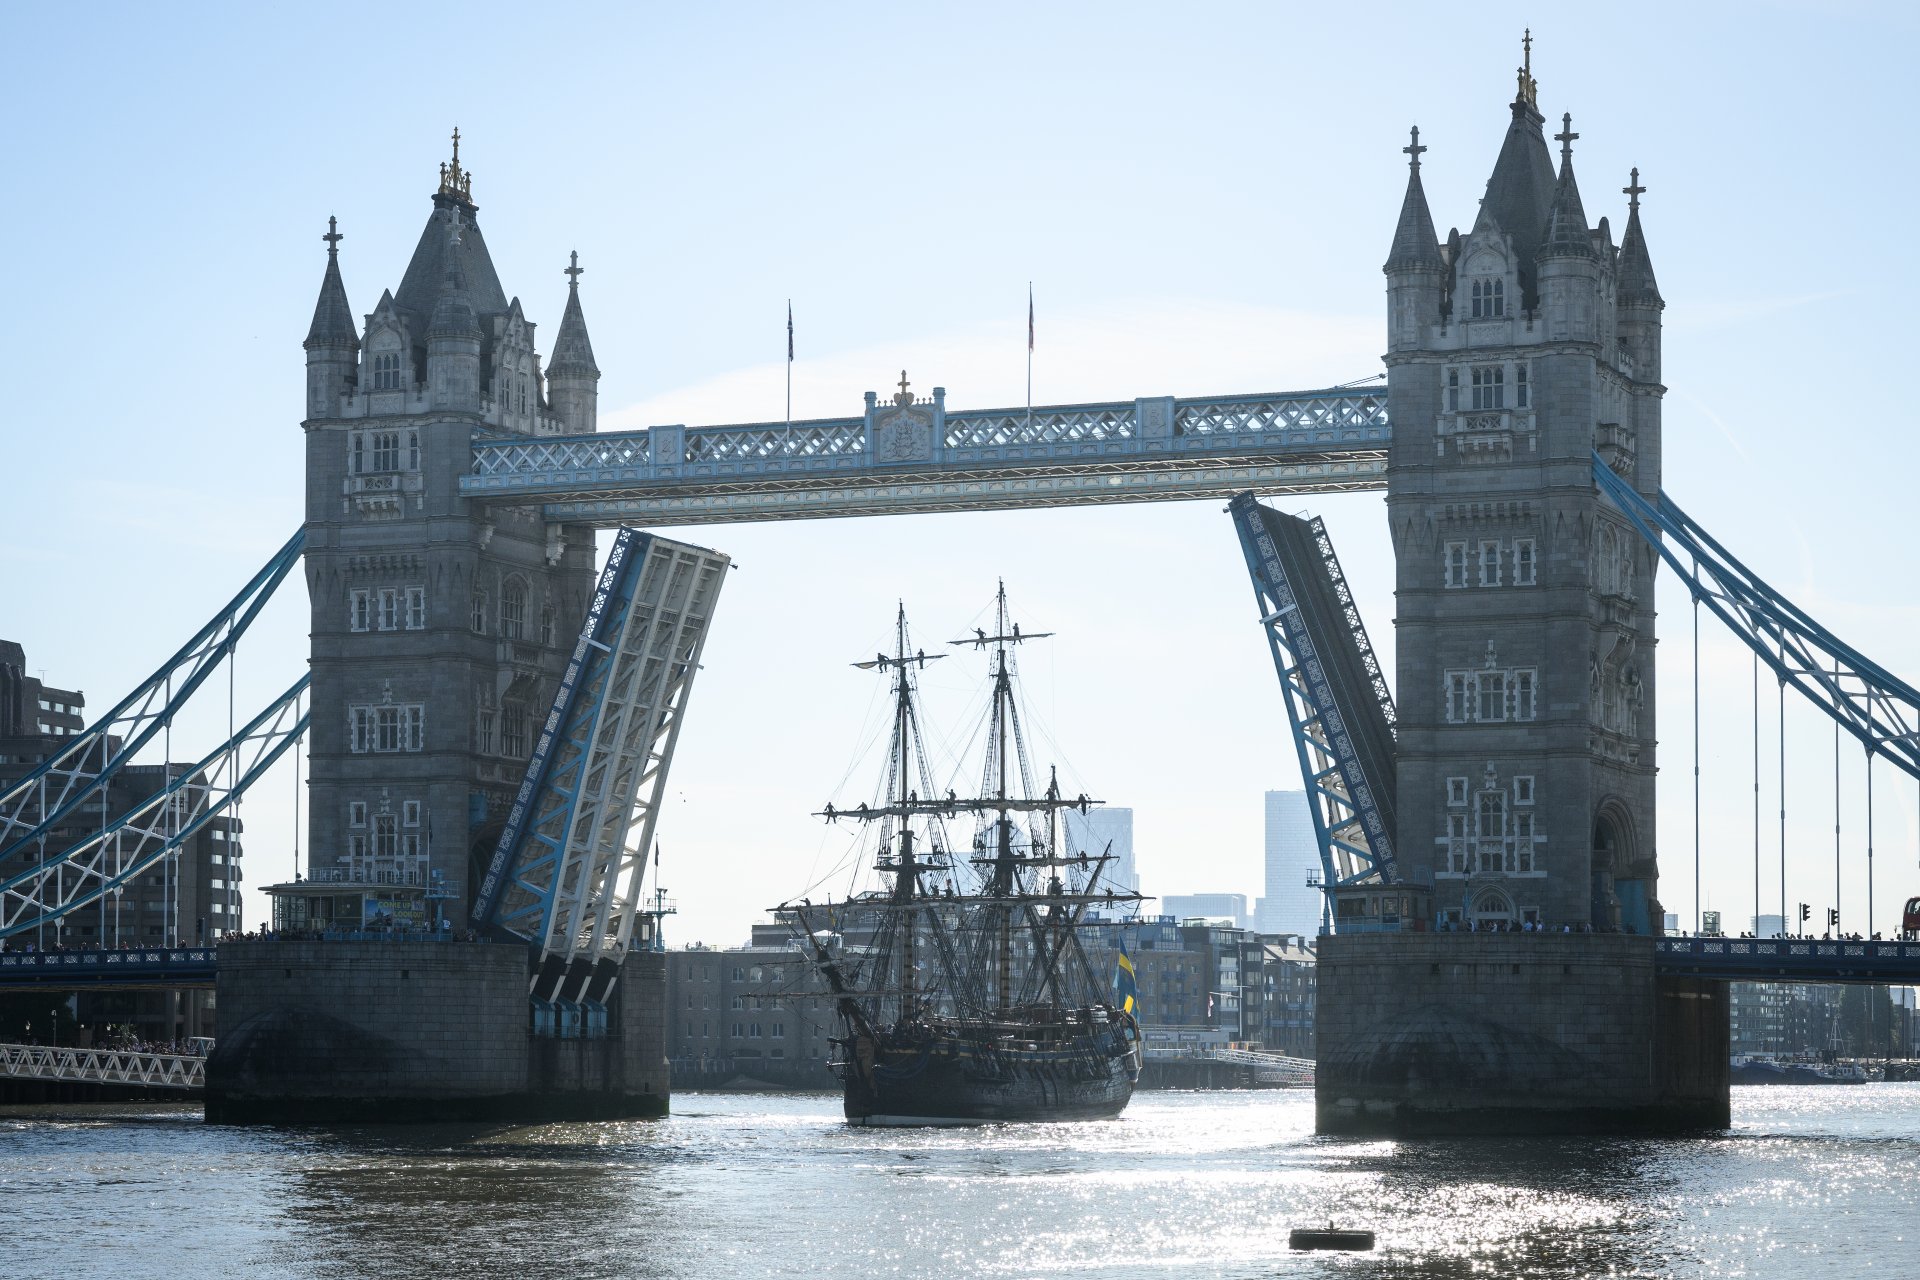 Плавателният съд е реплика на кораб, потънал близо до Гьотеборг през 1745 г. "Гцотеборг" последно посети Лондон през 2007 г.